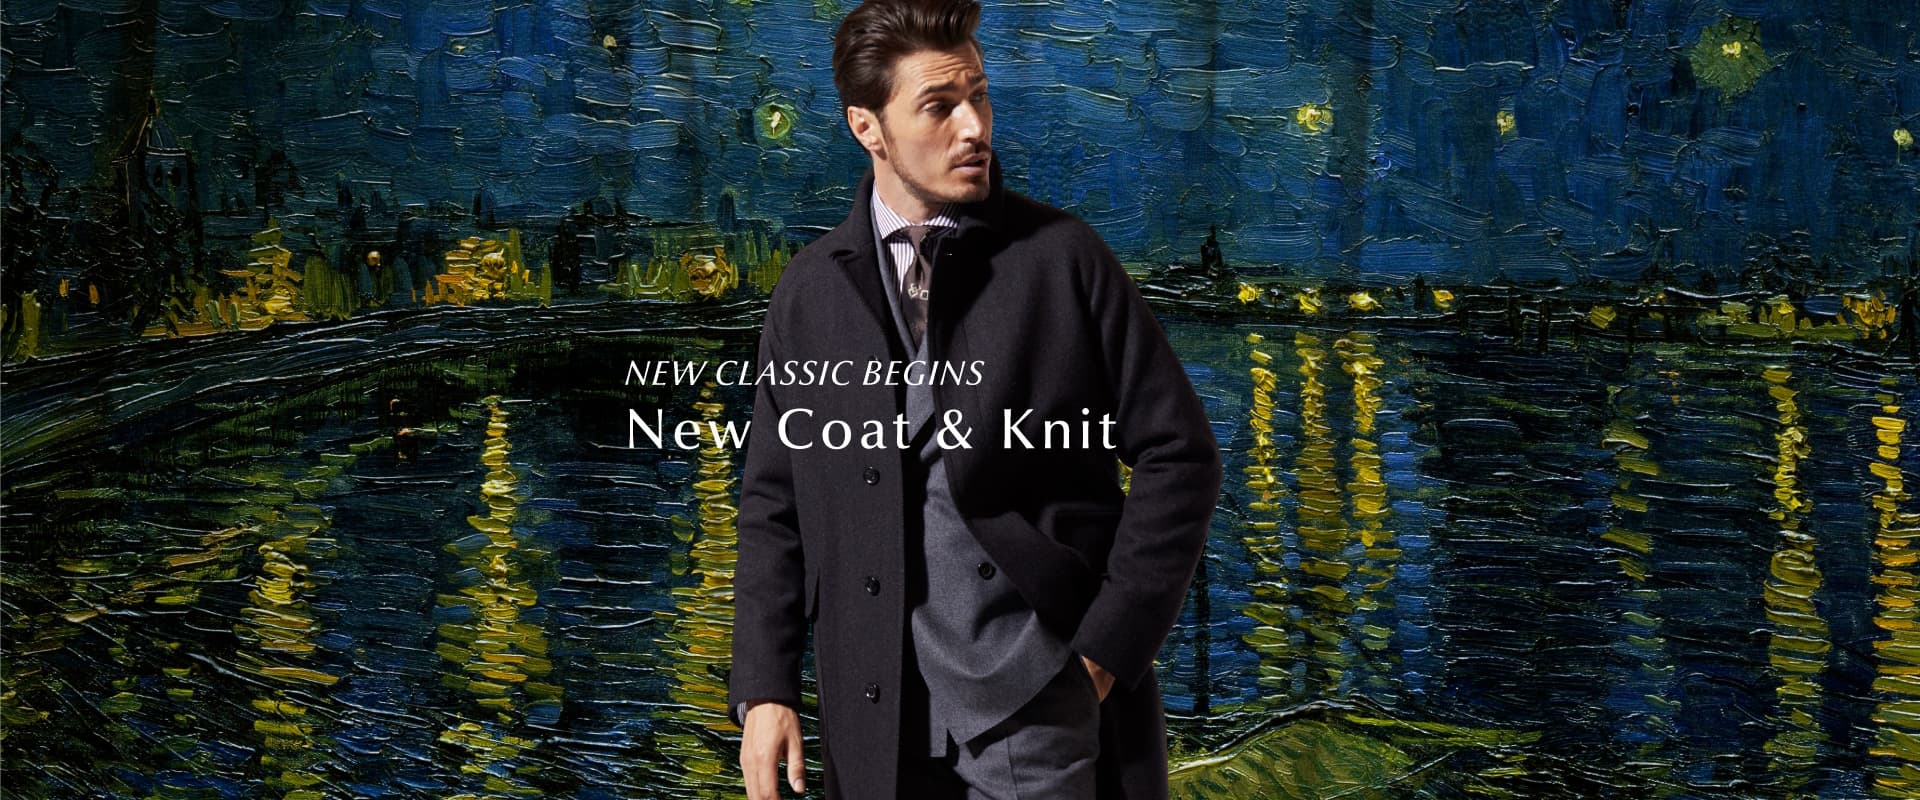 NEW CLASSIC BEGINS New Coat & Knit